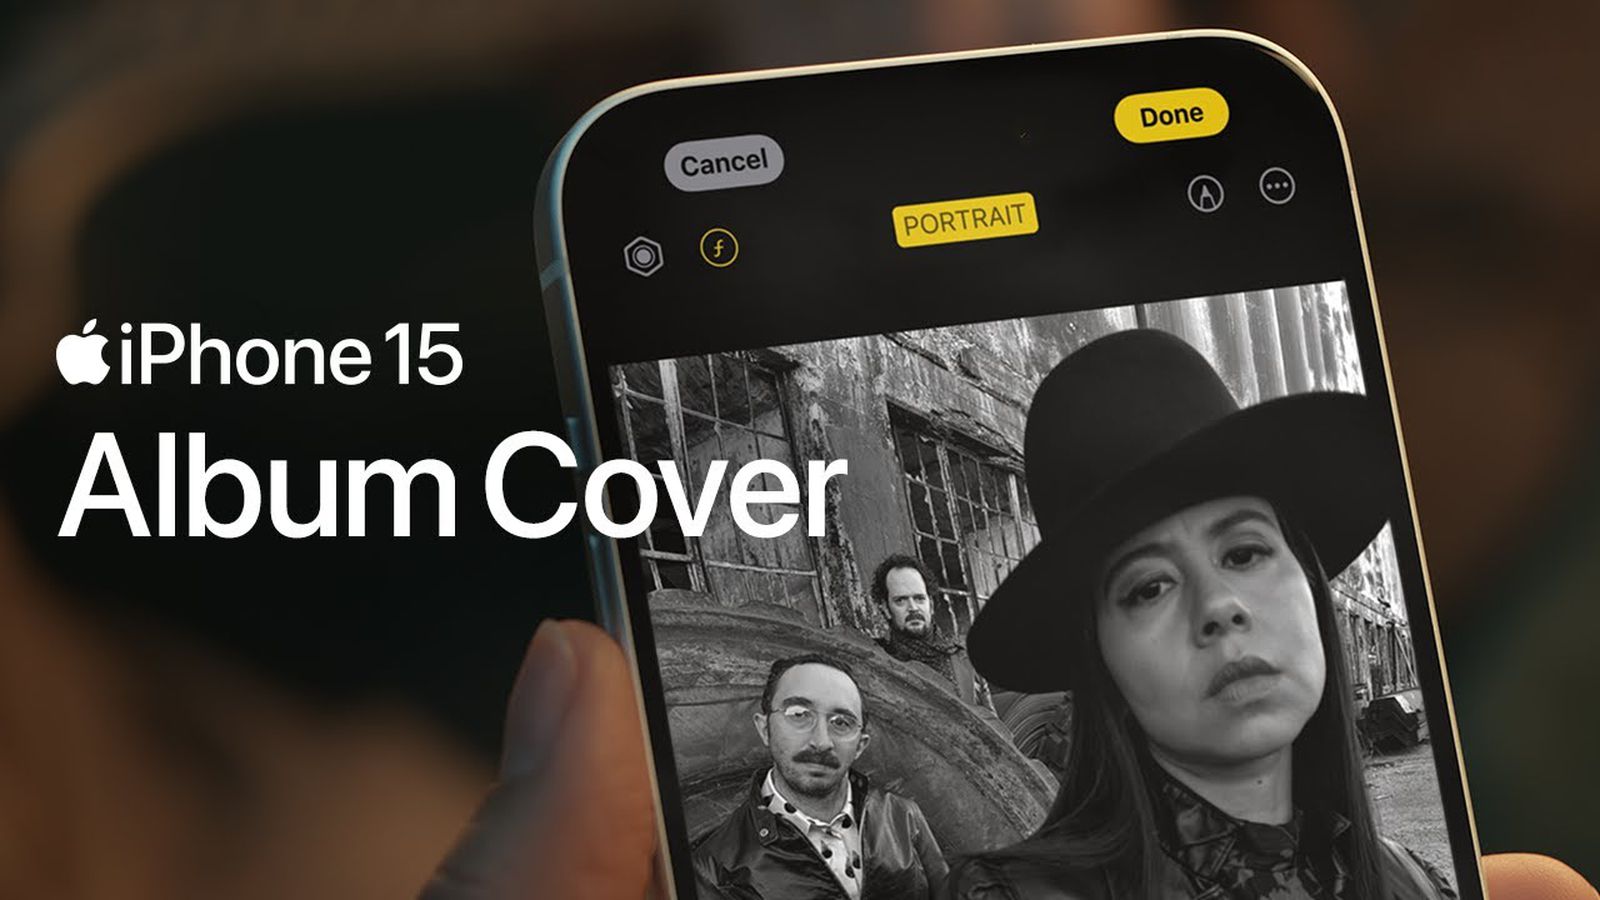 El anuncio del Apple iPhone 15 destaca las capacidades de la cámara de retrato